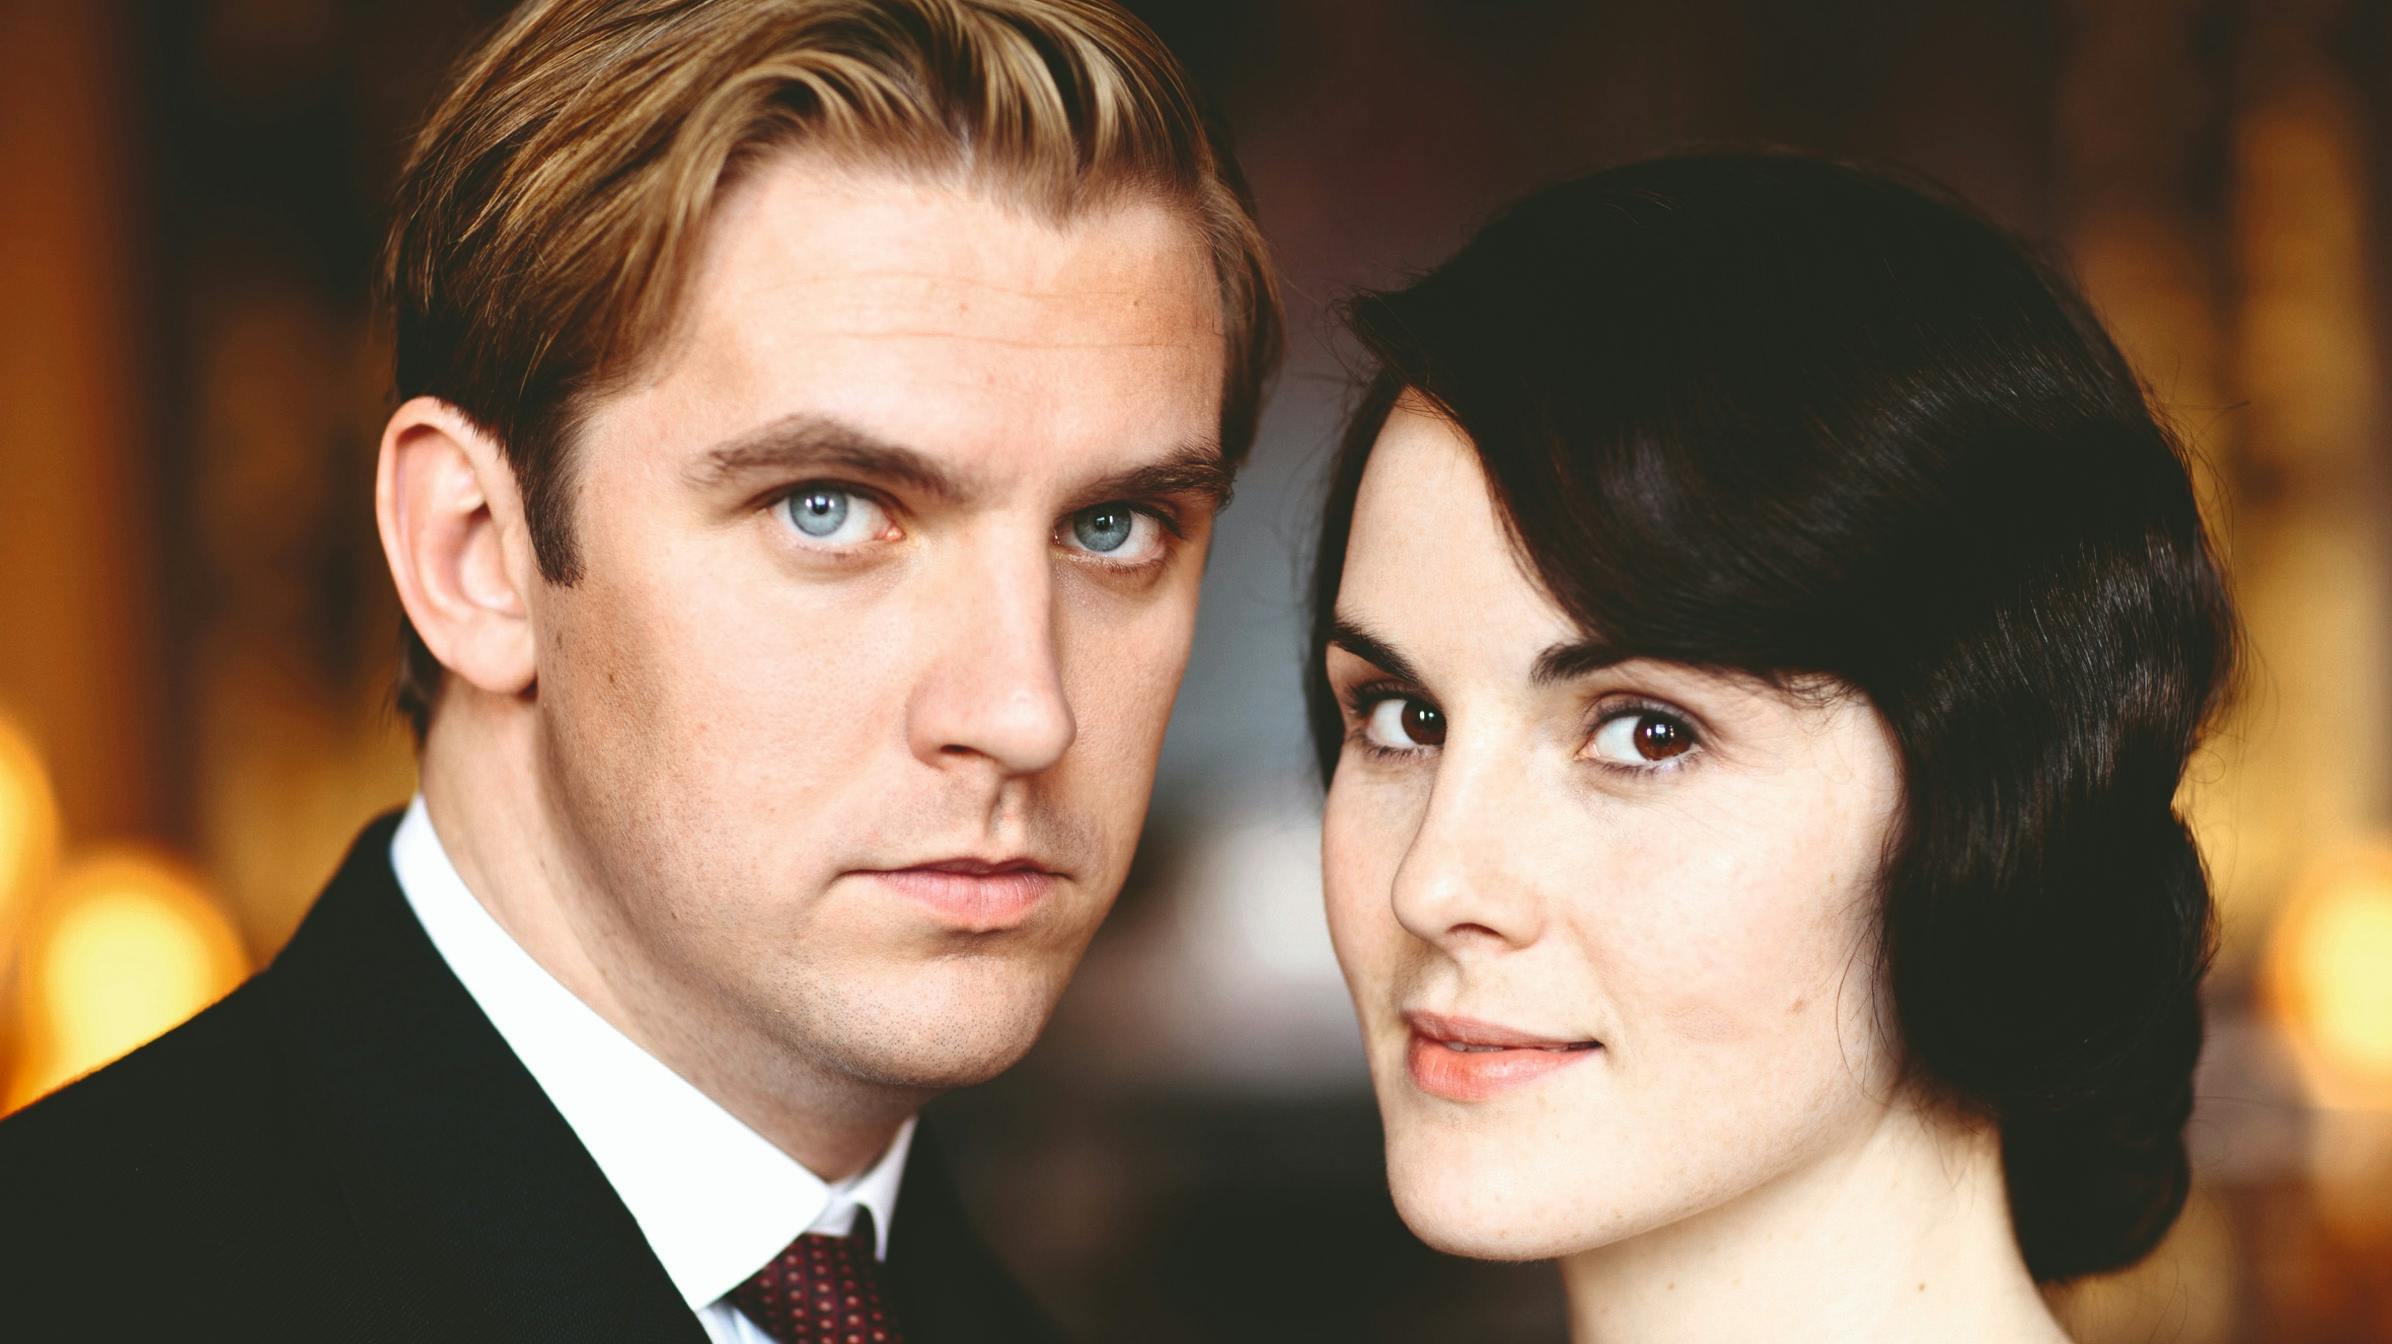 Matthew og Mary i tv-serien "Downton Abbey". 